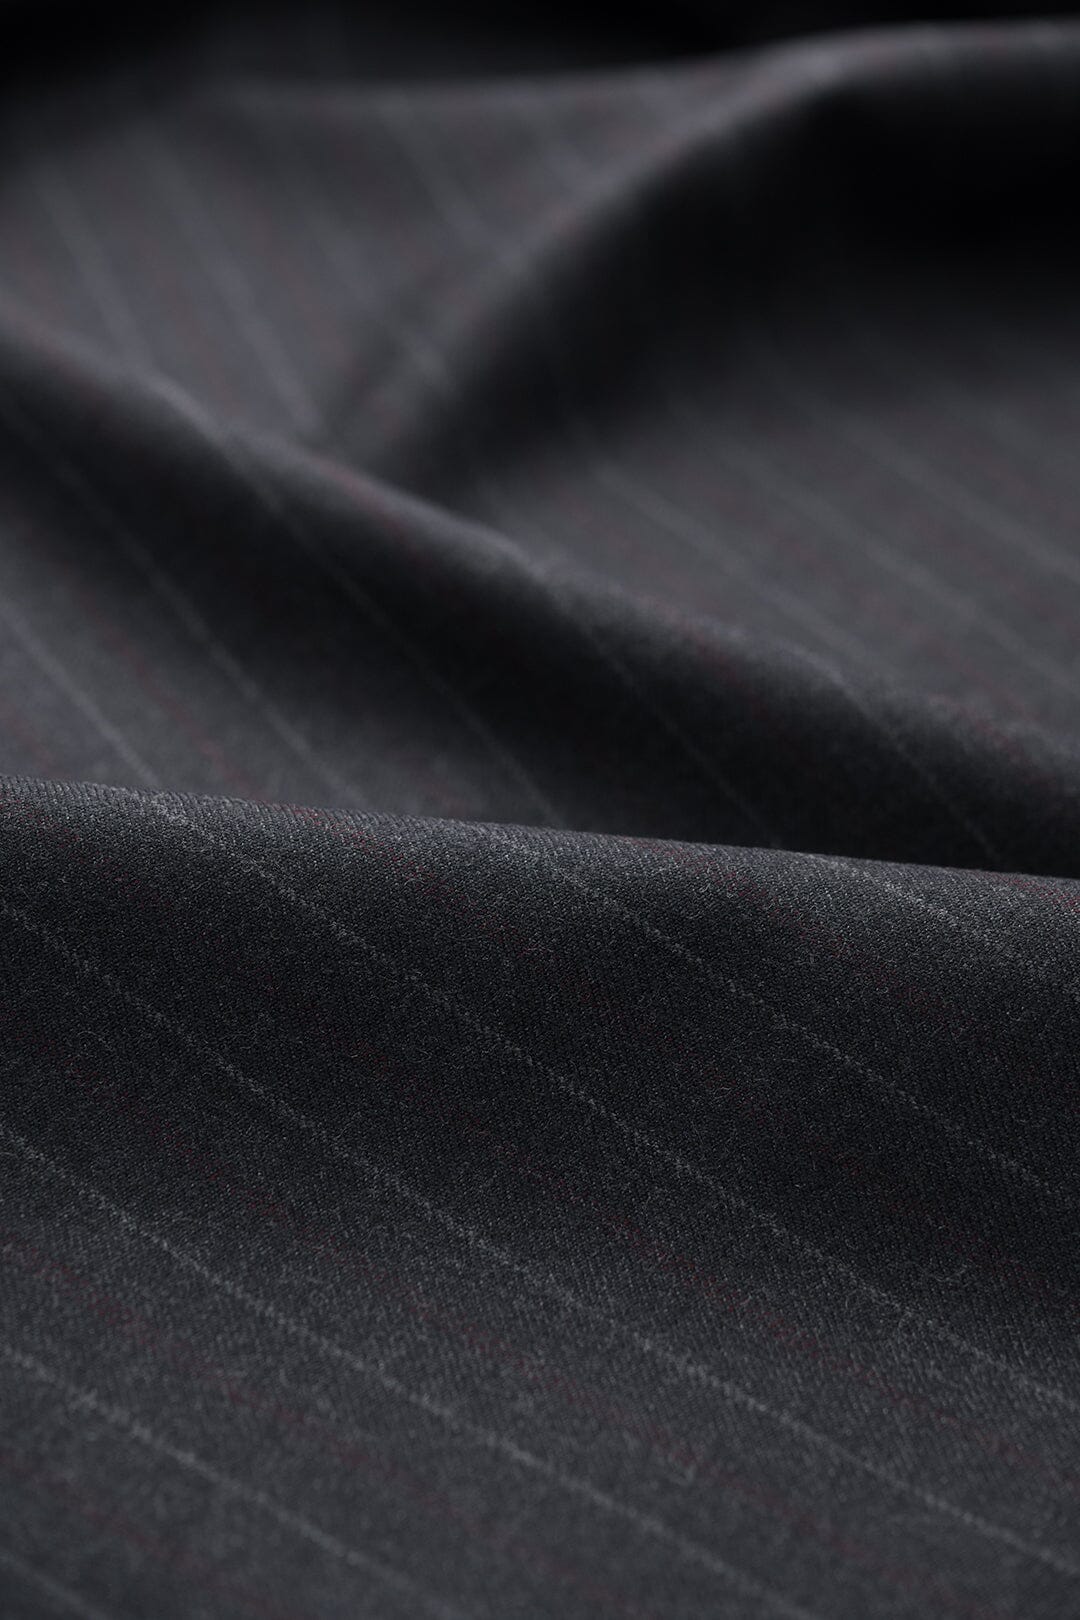 V20518 Charcoal Stripe Suiting-3.1m VINTAGE Vintage